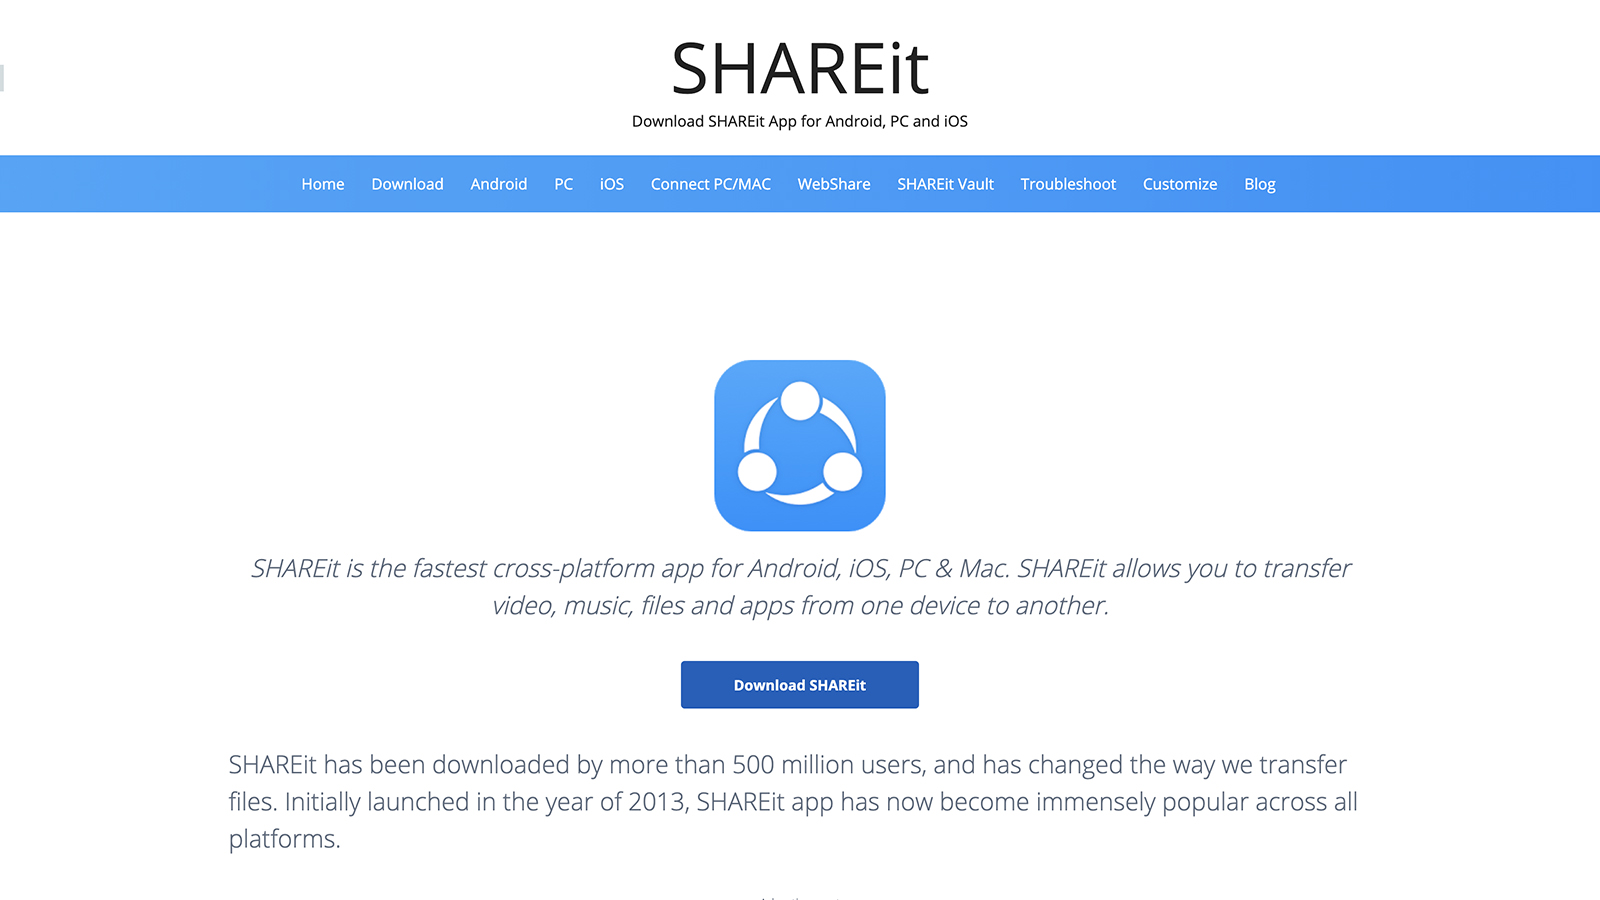 download a shareit app